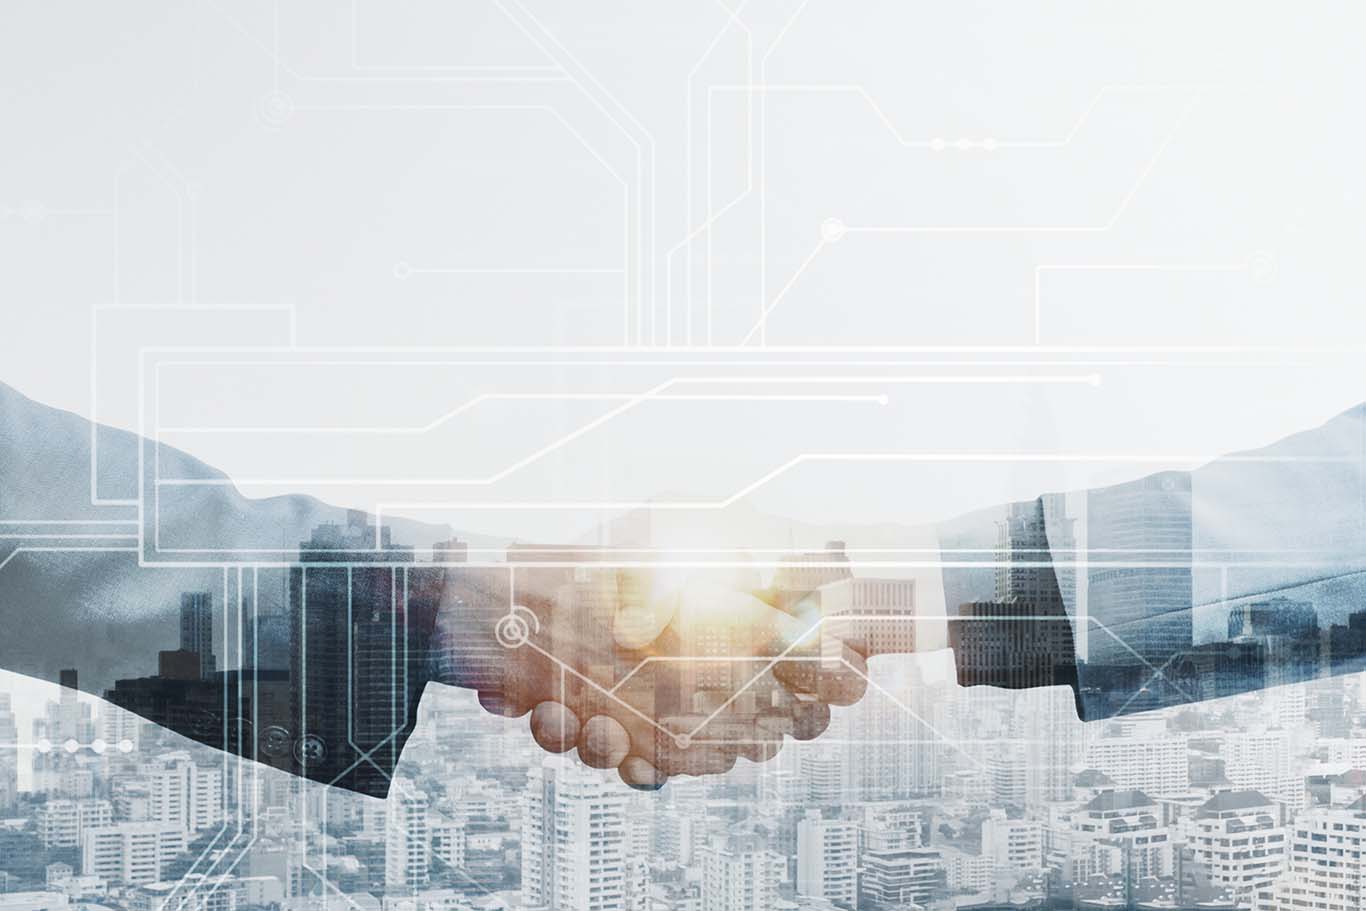 SAS y TechData anunciaron la firma de un acuerdo de distribución para llevar las soluciones analíticas y de inteligencia artificial